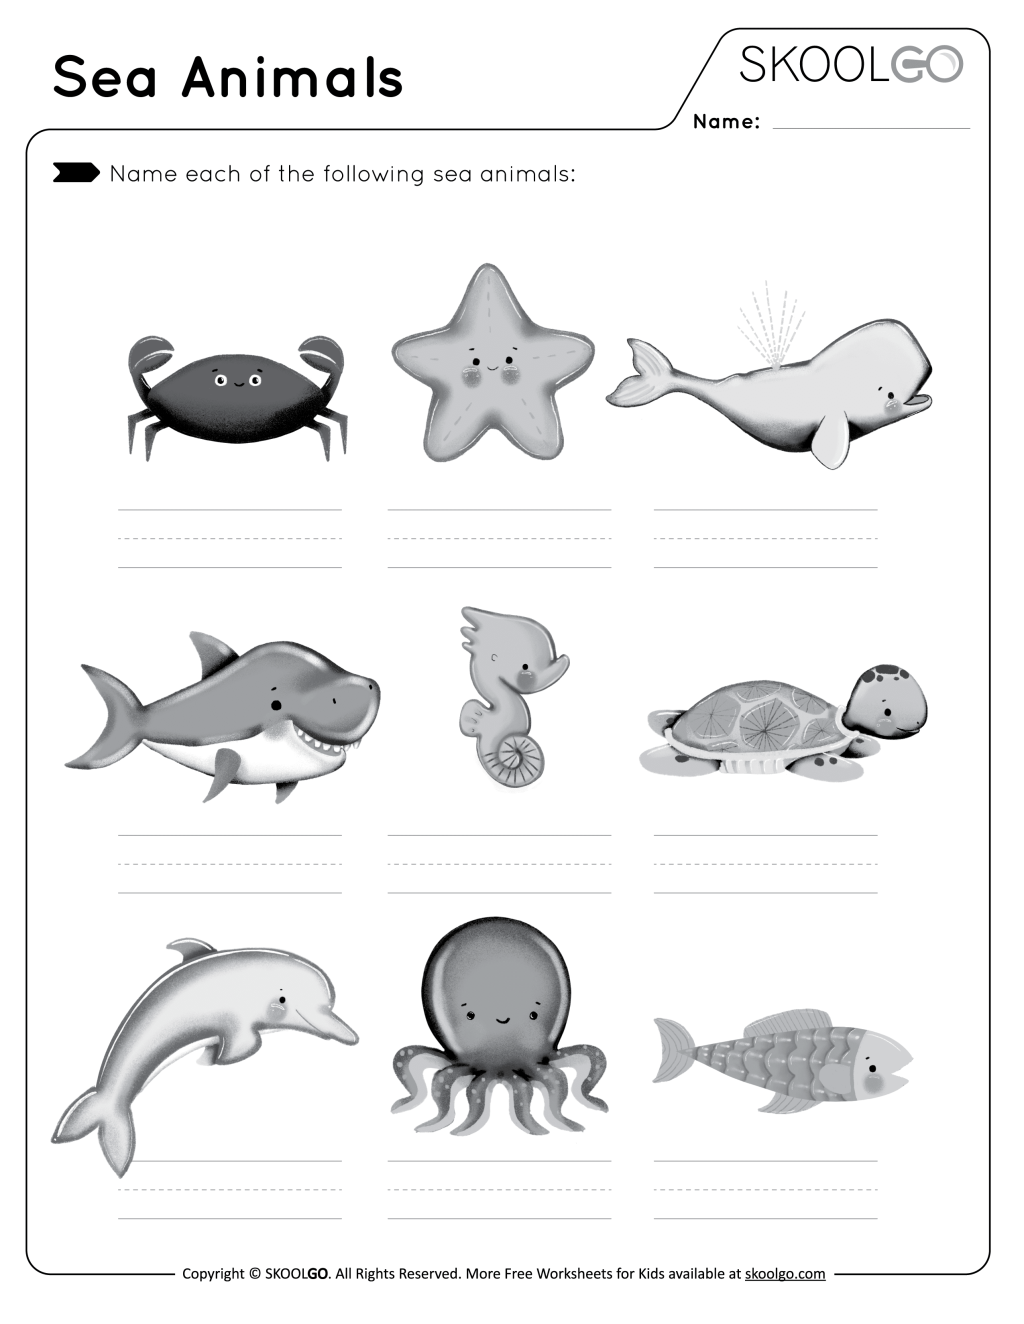 Picture of: Sea Animals – Free Worksheet – SKOOLGO